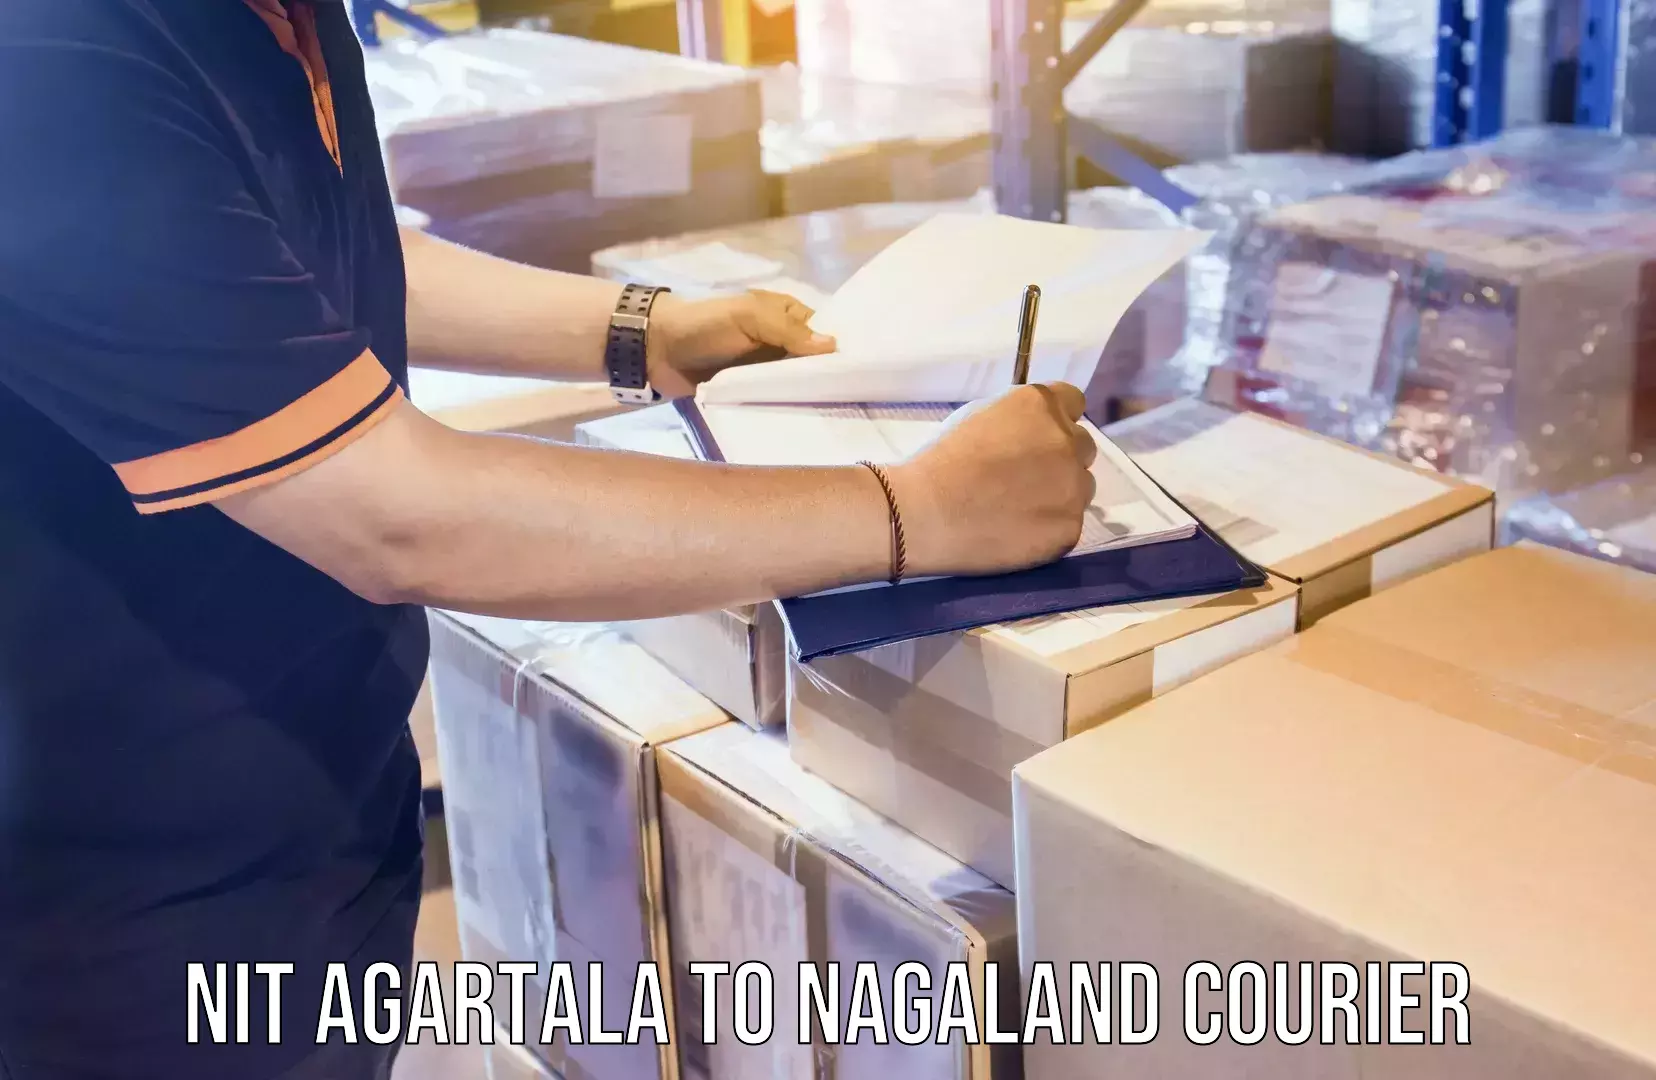 24/7 shipping services NIT Agartala to Nagaland